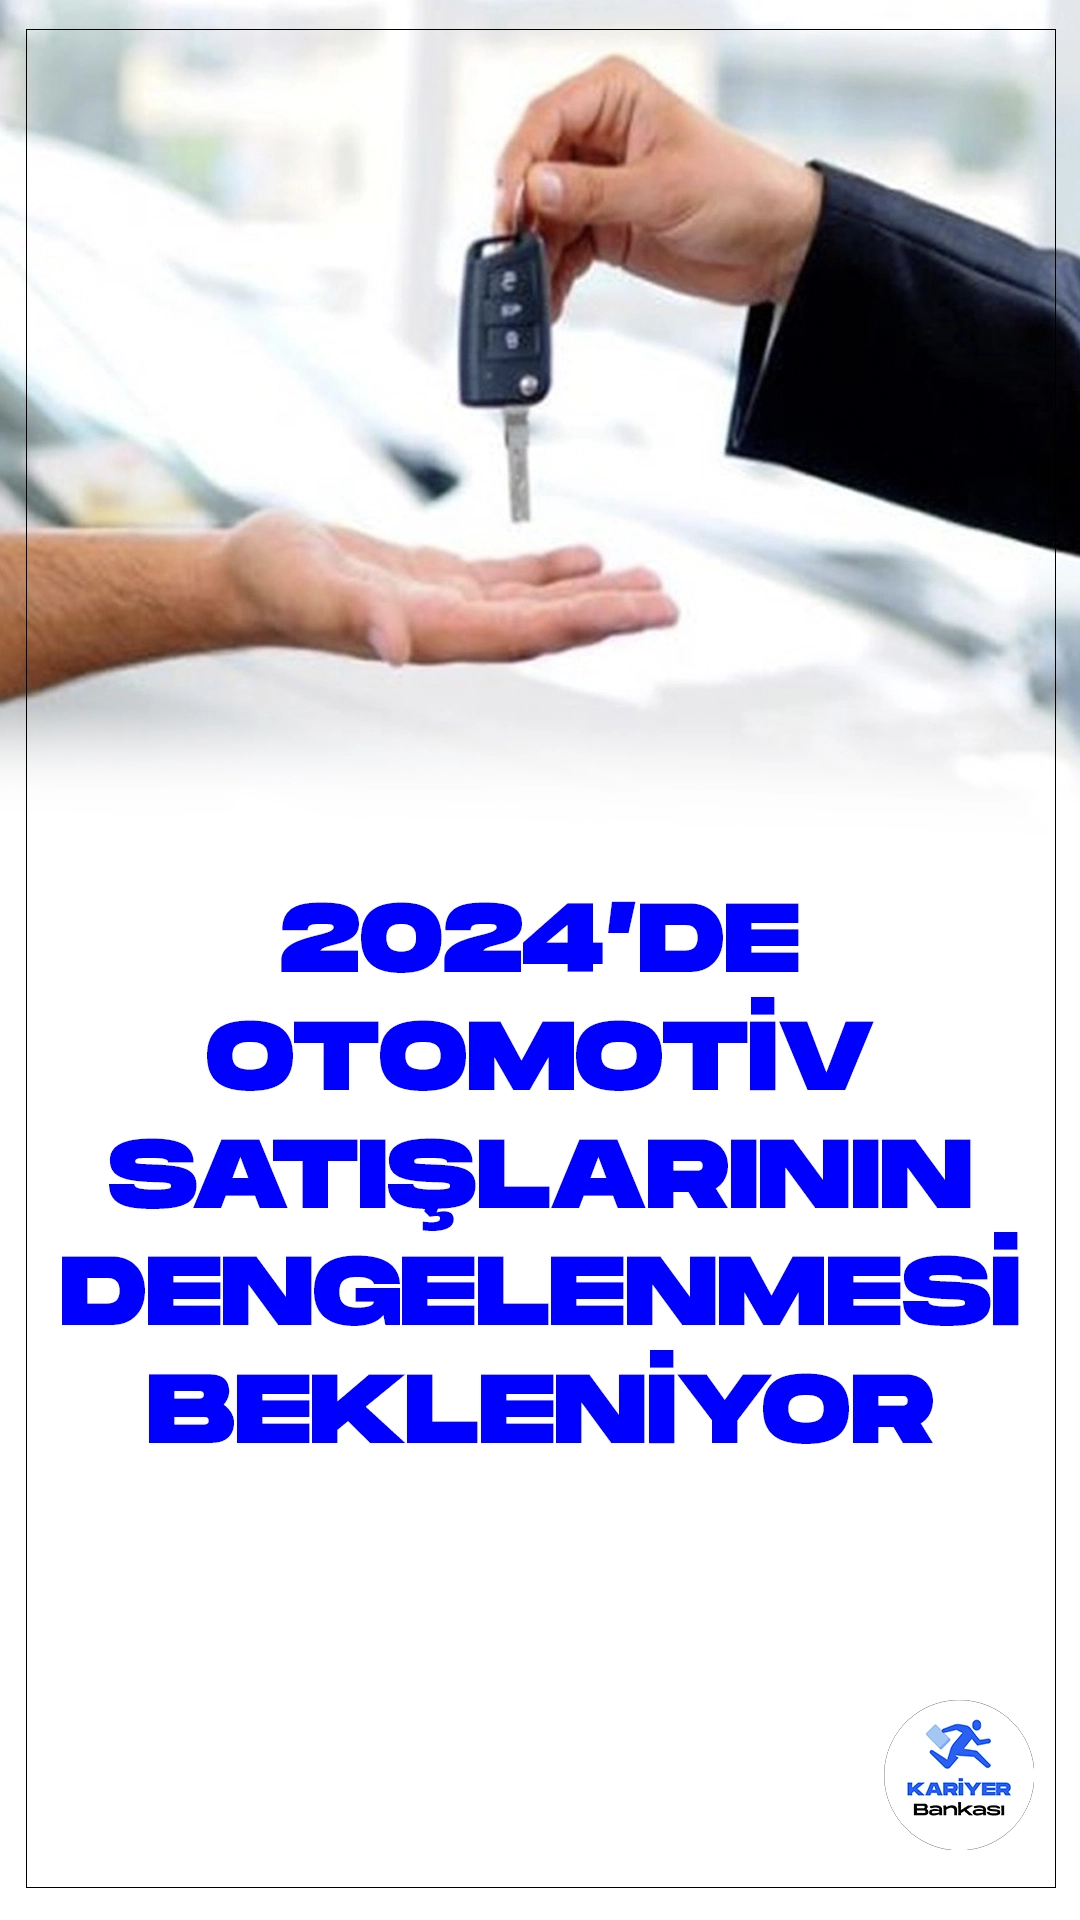 Otomotiv Satışlarının 2024 Yılında Dengelenmesi Bekleniyor.Türkiye'deki otomotiv markalarının üst düzey yöneticileri, 2023 yılının pazar performansını değerlendirerek, gelecek yıl için arz ve talebin dengelenmesiyle birlikte toplam pazar hacminde bir azalış öngörüyor. İşte Türkiye otomotiv sektöründen önemli açıklamalar ve 2024 beklentileri: